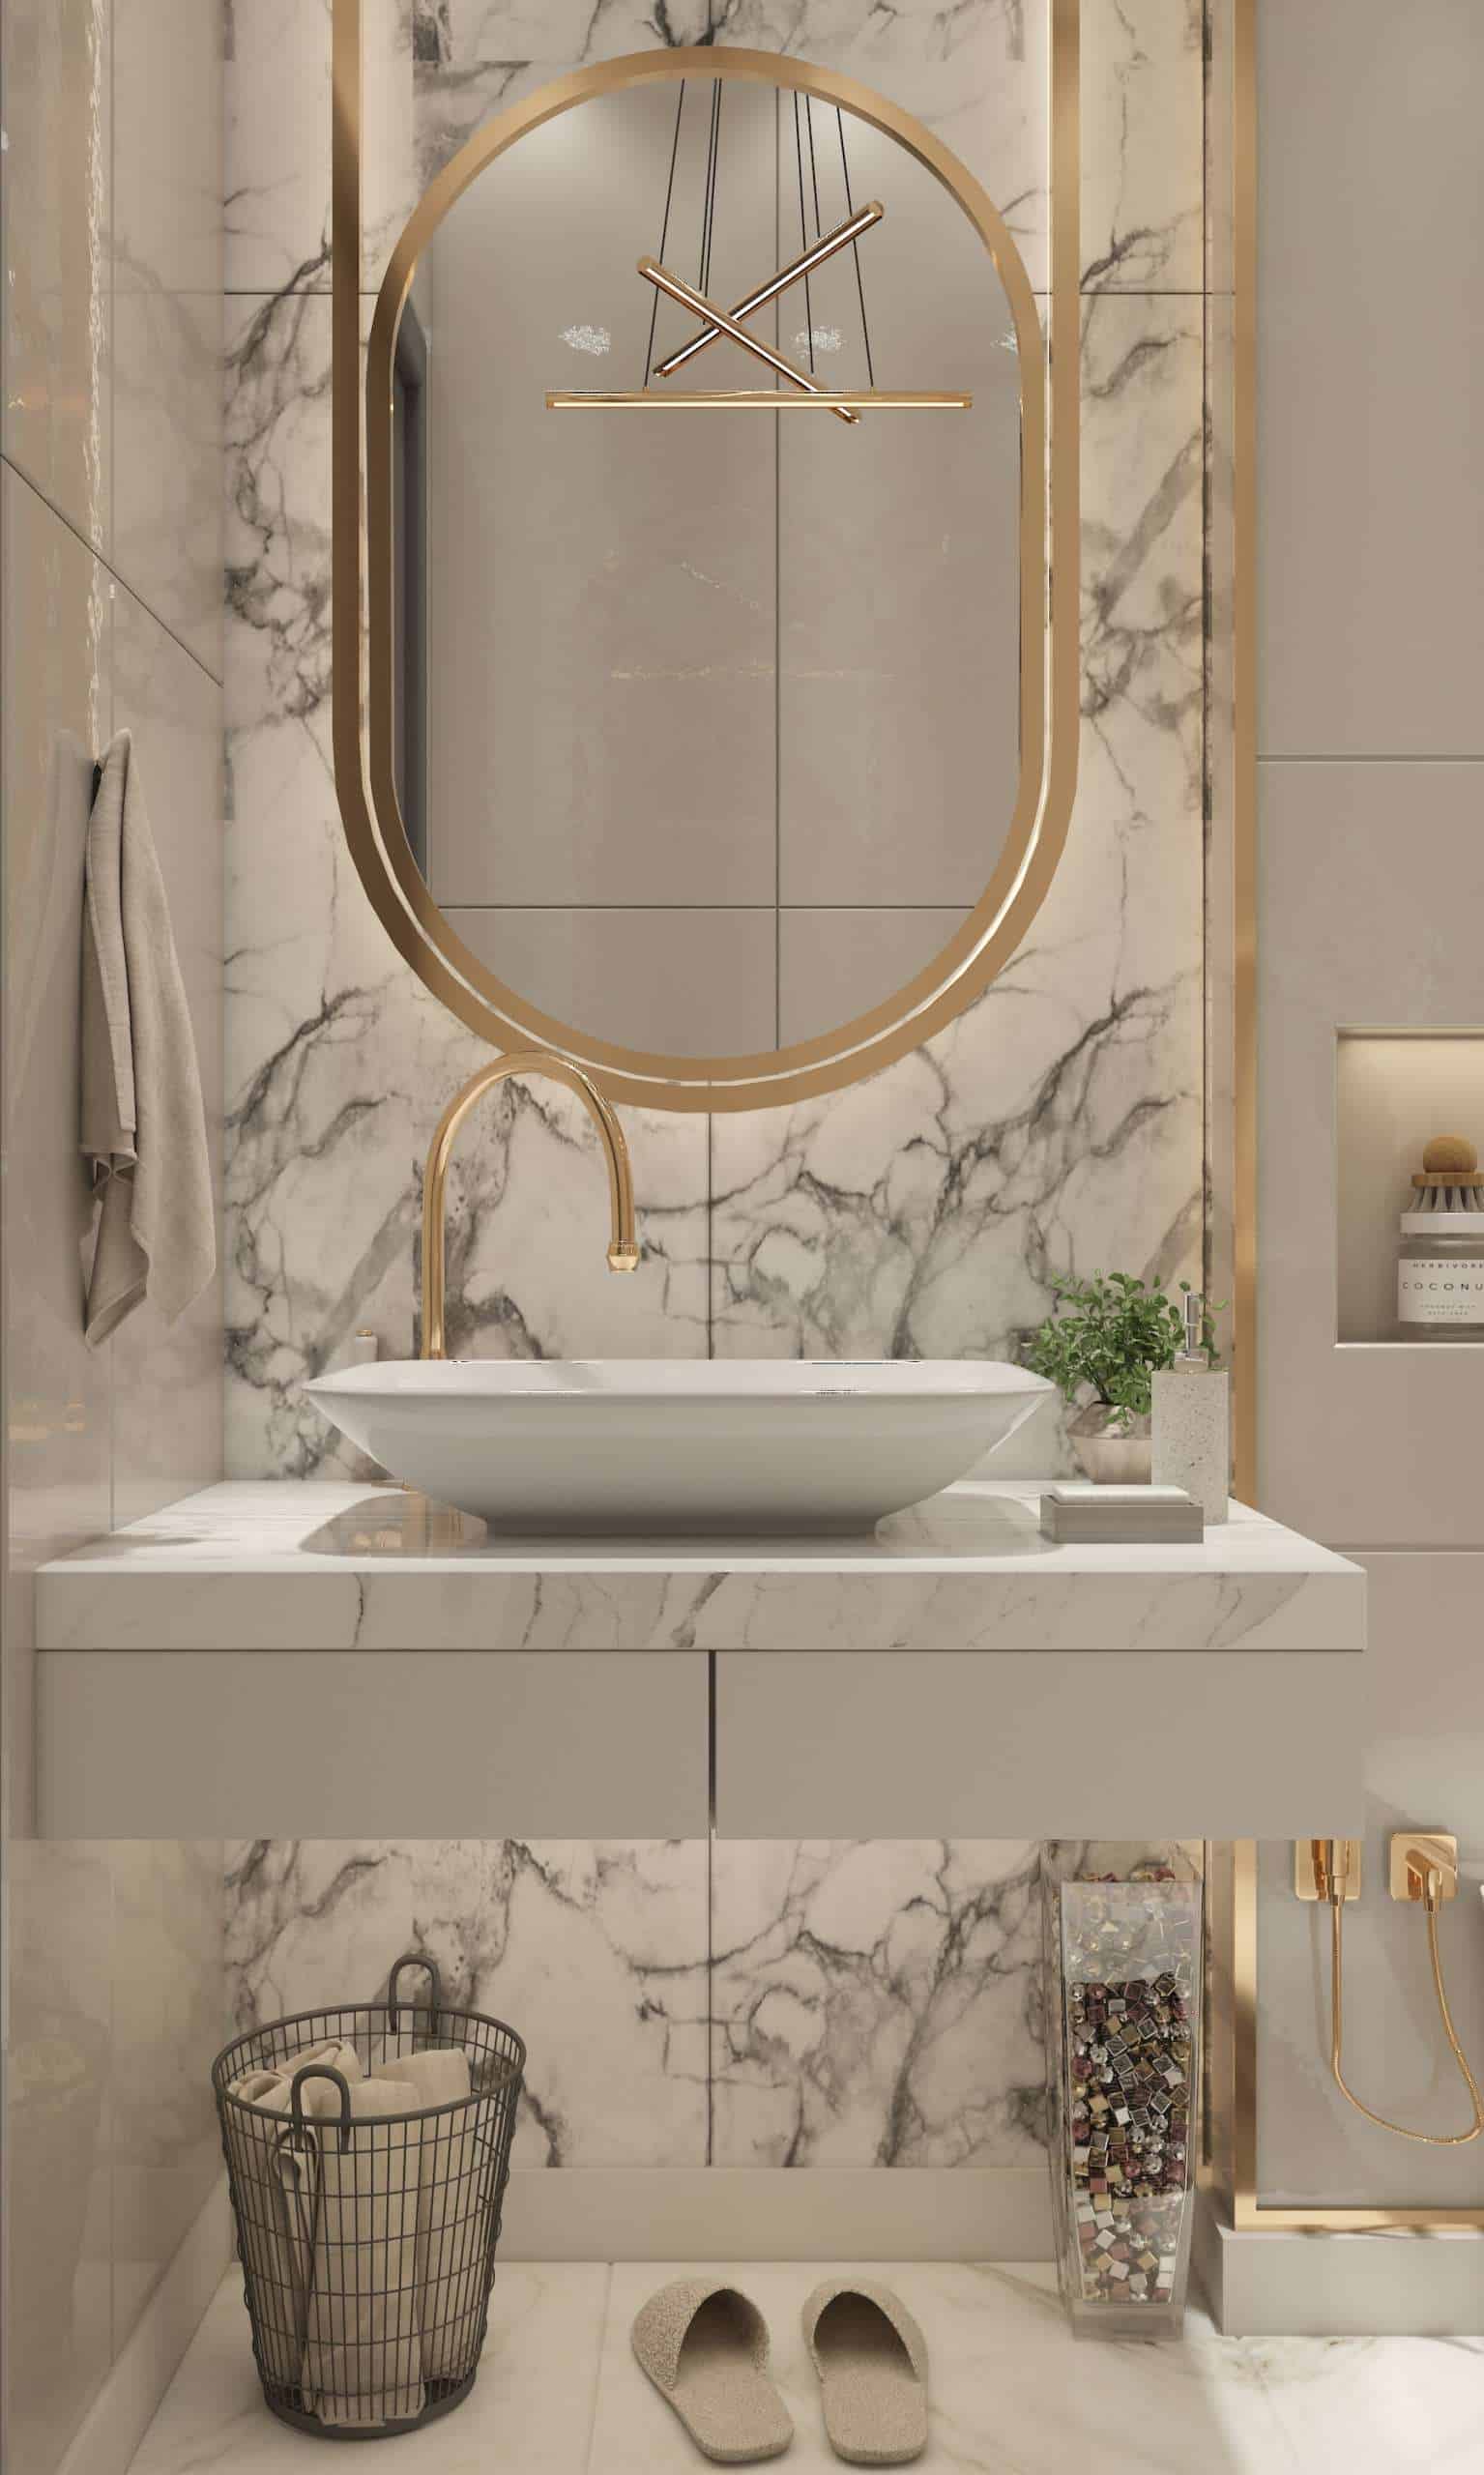 Marble bathroom – how to arrange it?